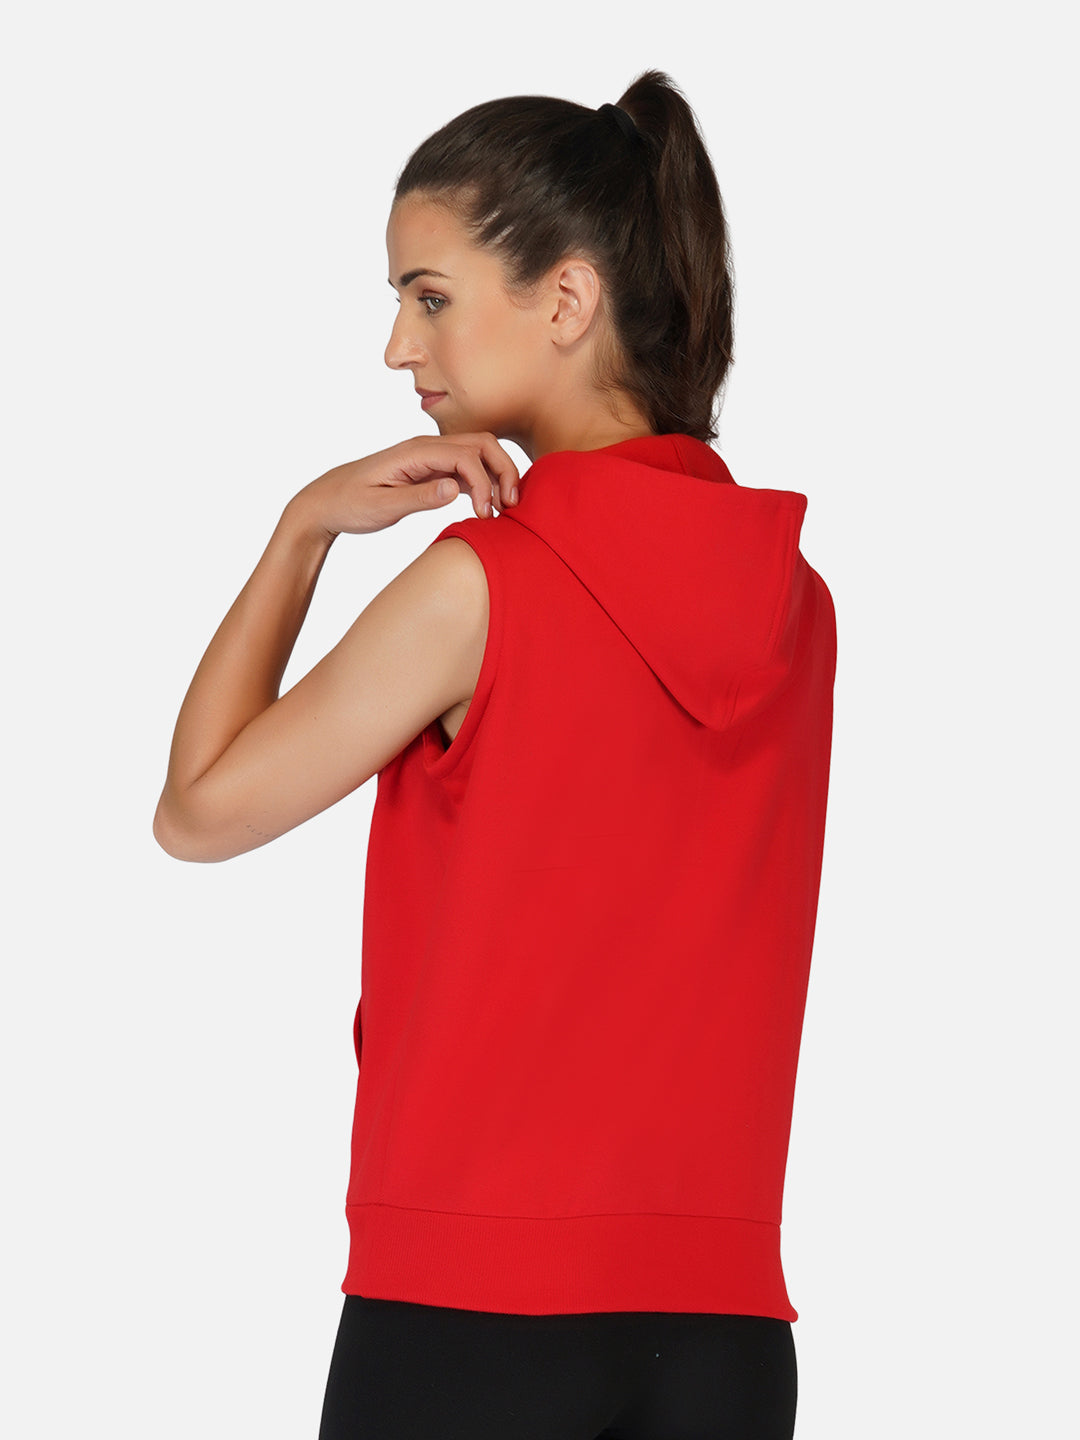 UZARUS Women's Half Sleeves Cotton Fleece Premium Jacket with Hood